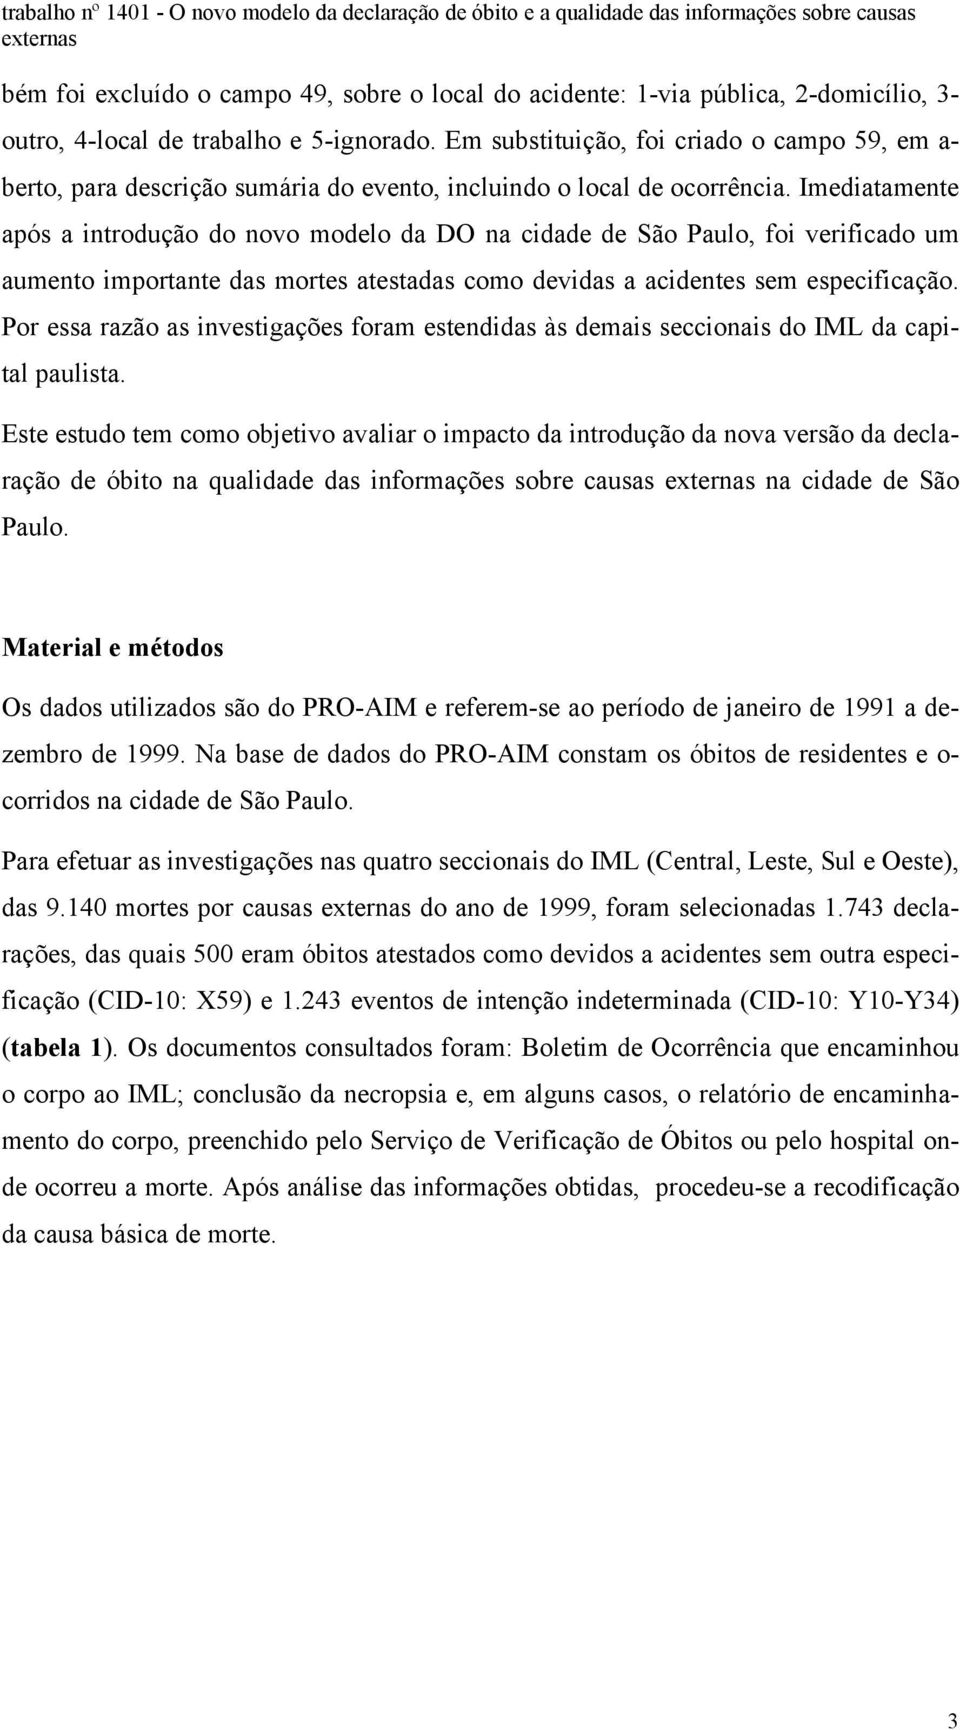 Imediatamente após a introdução do novo modelo da DO na cidade de São Paulo, foi verificado um aumento importante das mortes atestadas como devidas a acidentes sem especificação.